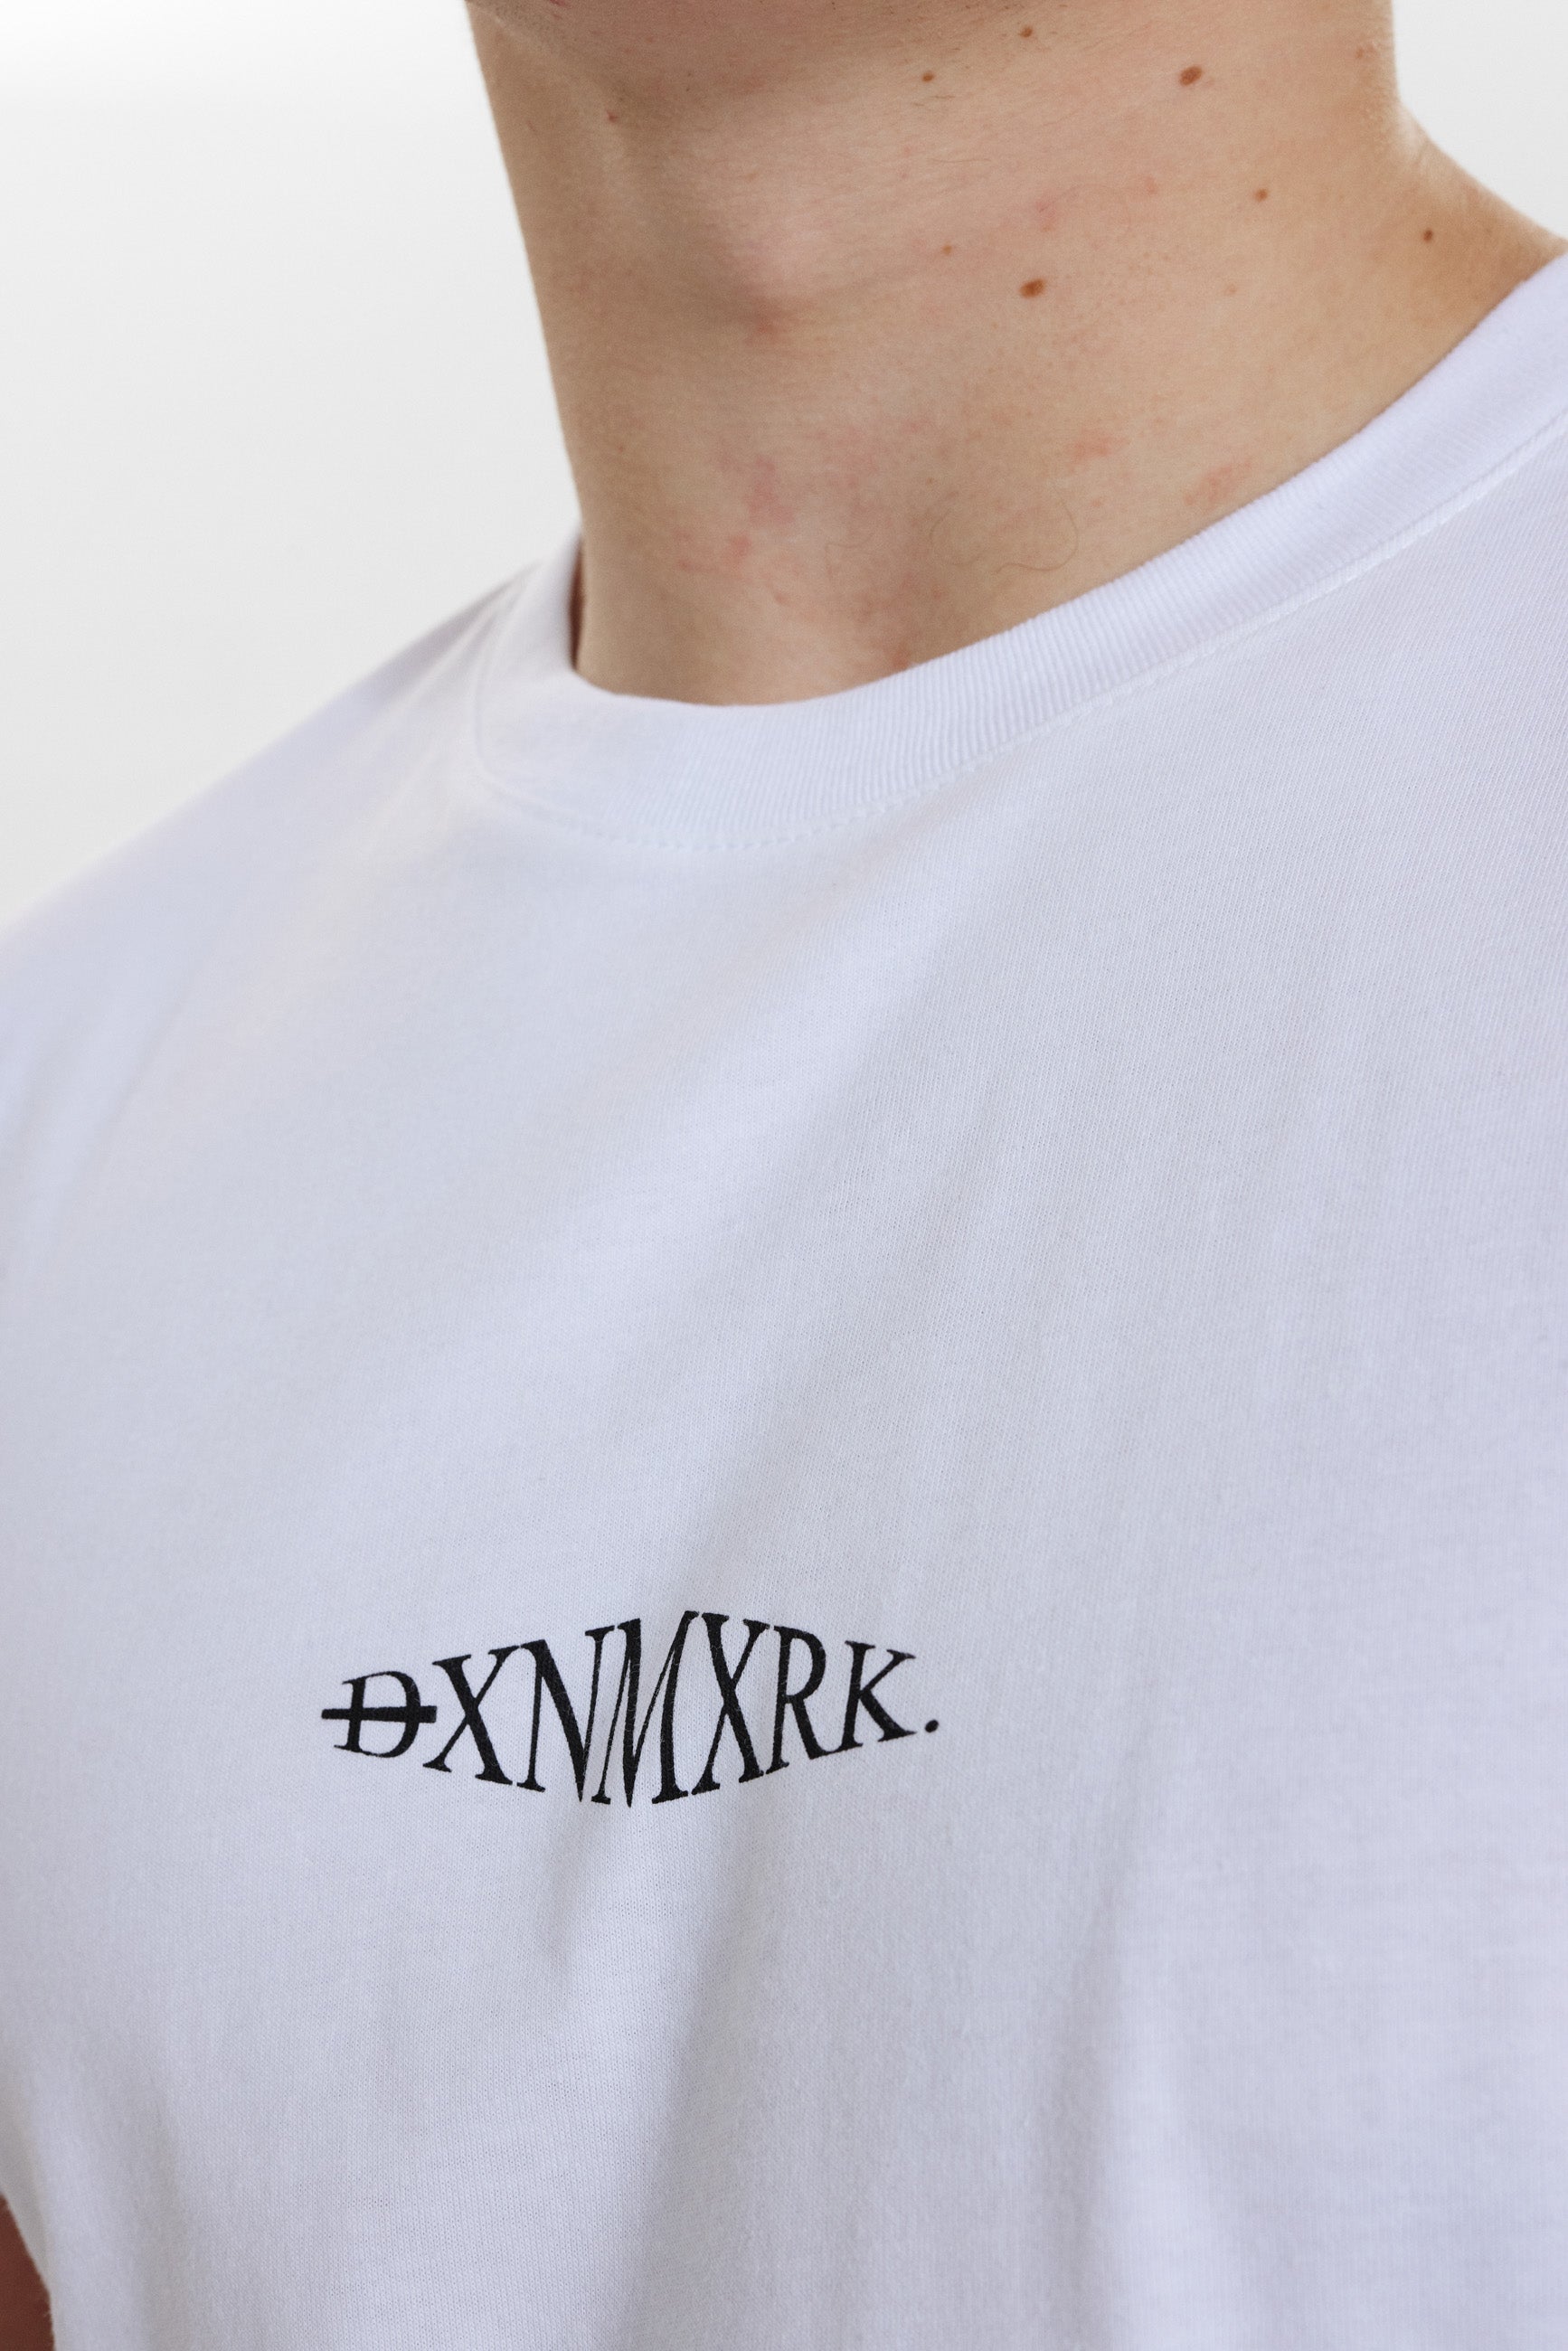 DXNMXRK. DX-Arne T-shirt White